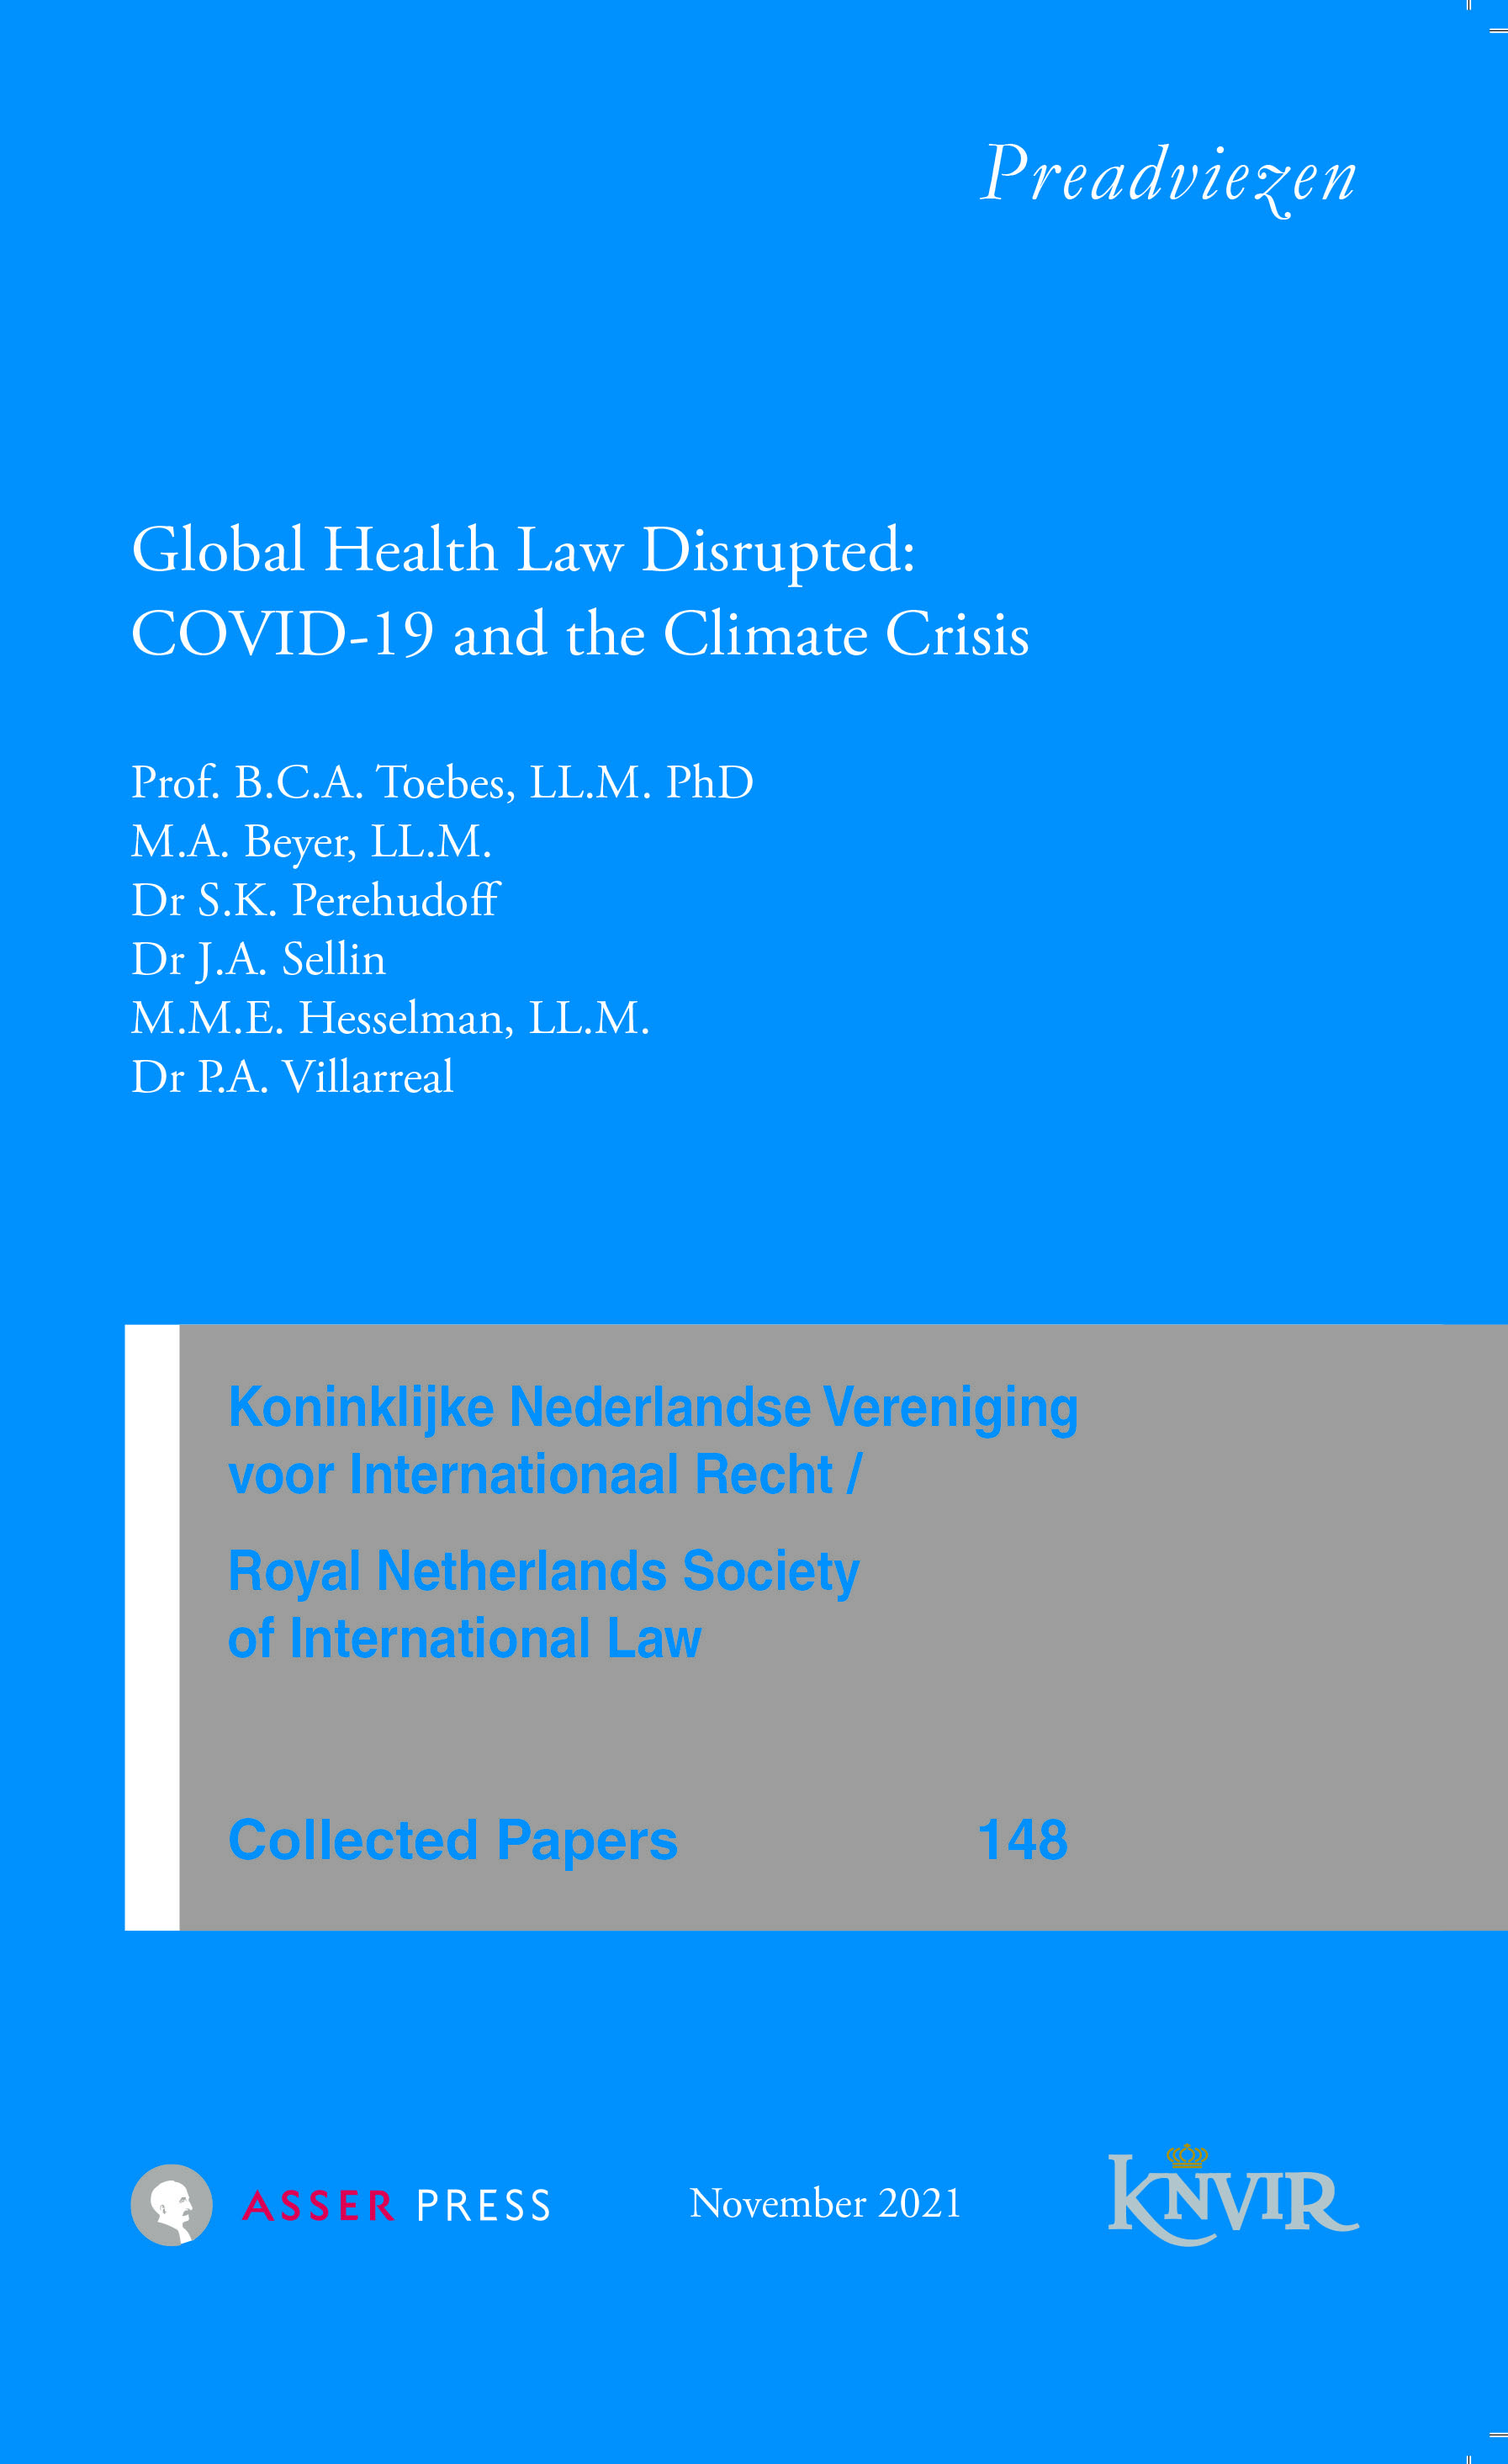 Collected Papers van de Koninklijke Nederlandse Vereniging voor Internationaal Recht - nr 148 - Global Health Law Disrupted: COVID-19 and the Climate Crisis